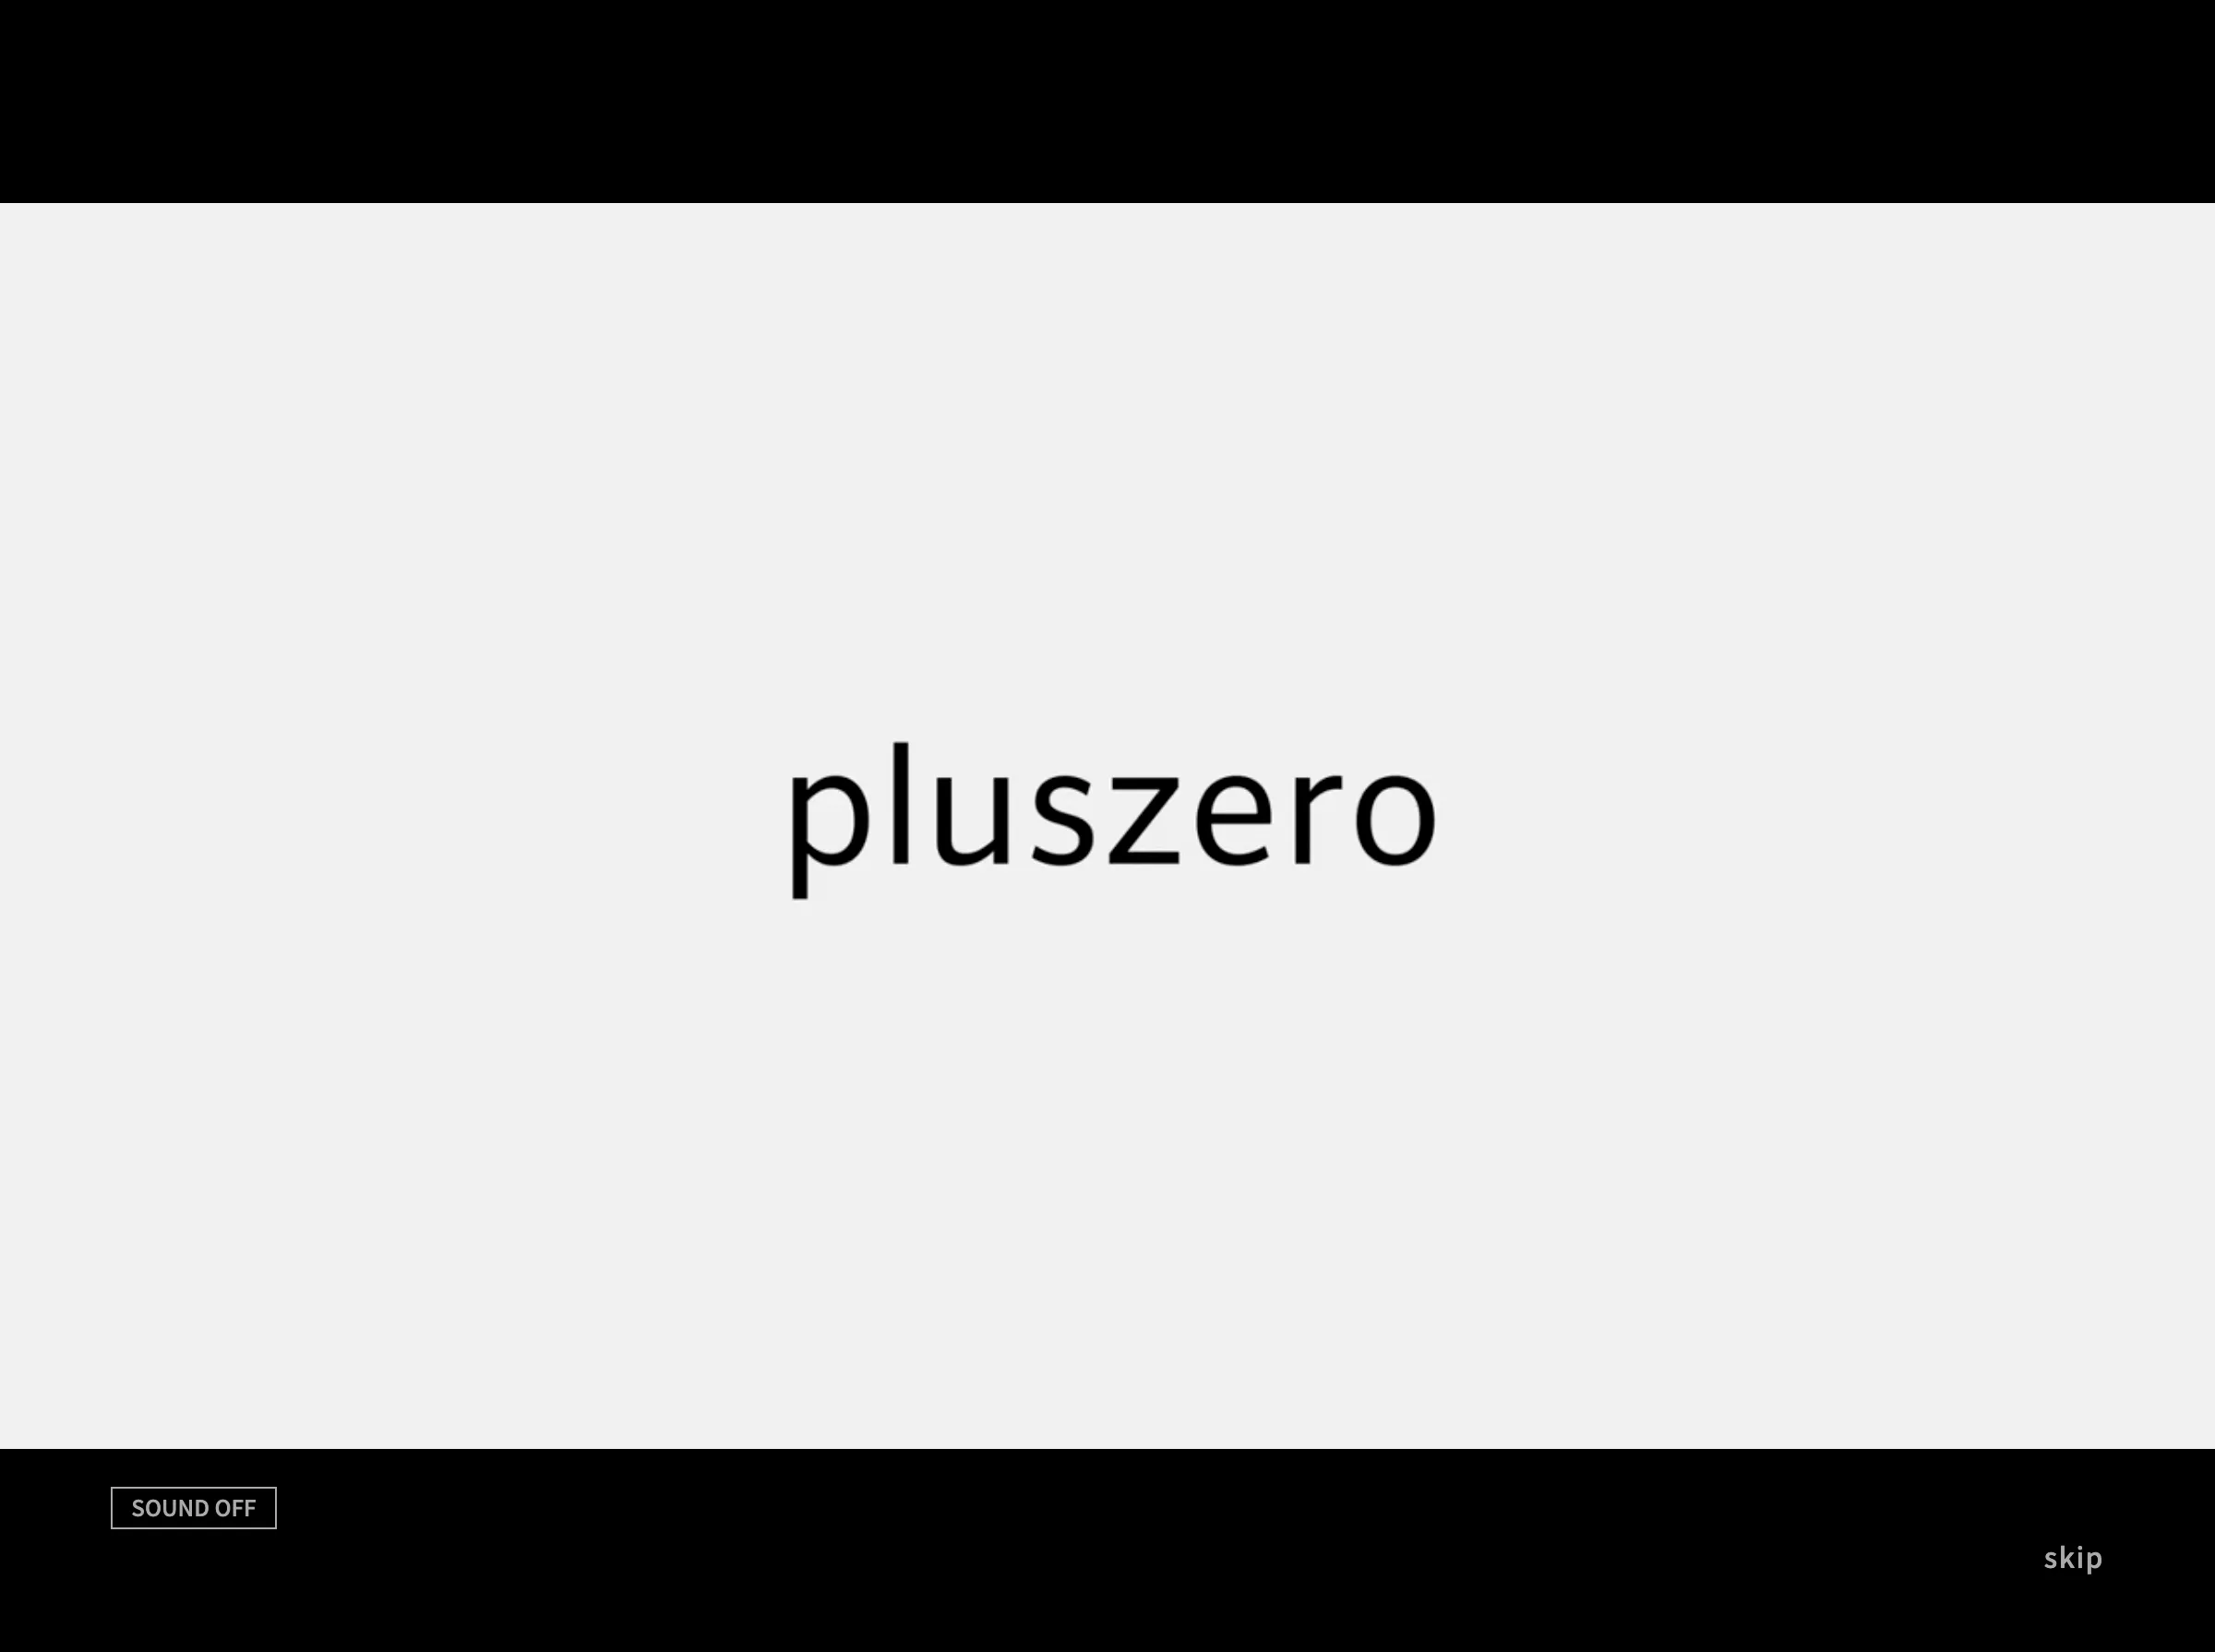 株式会社 pluszero